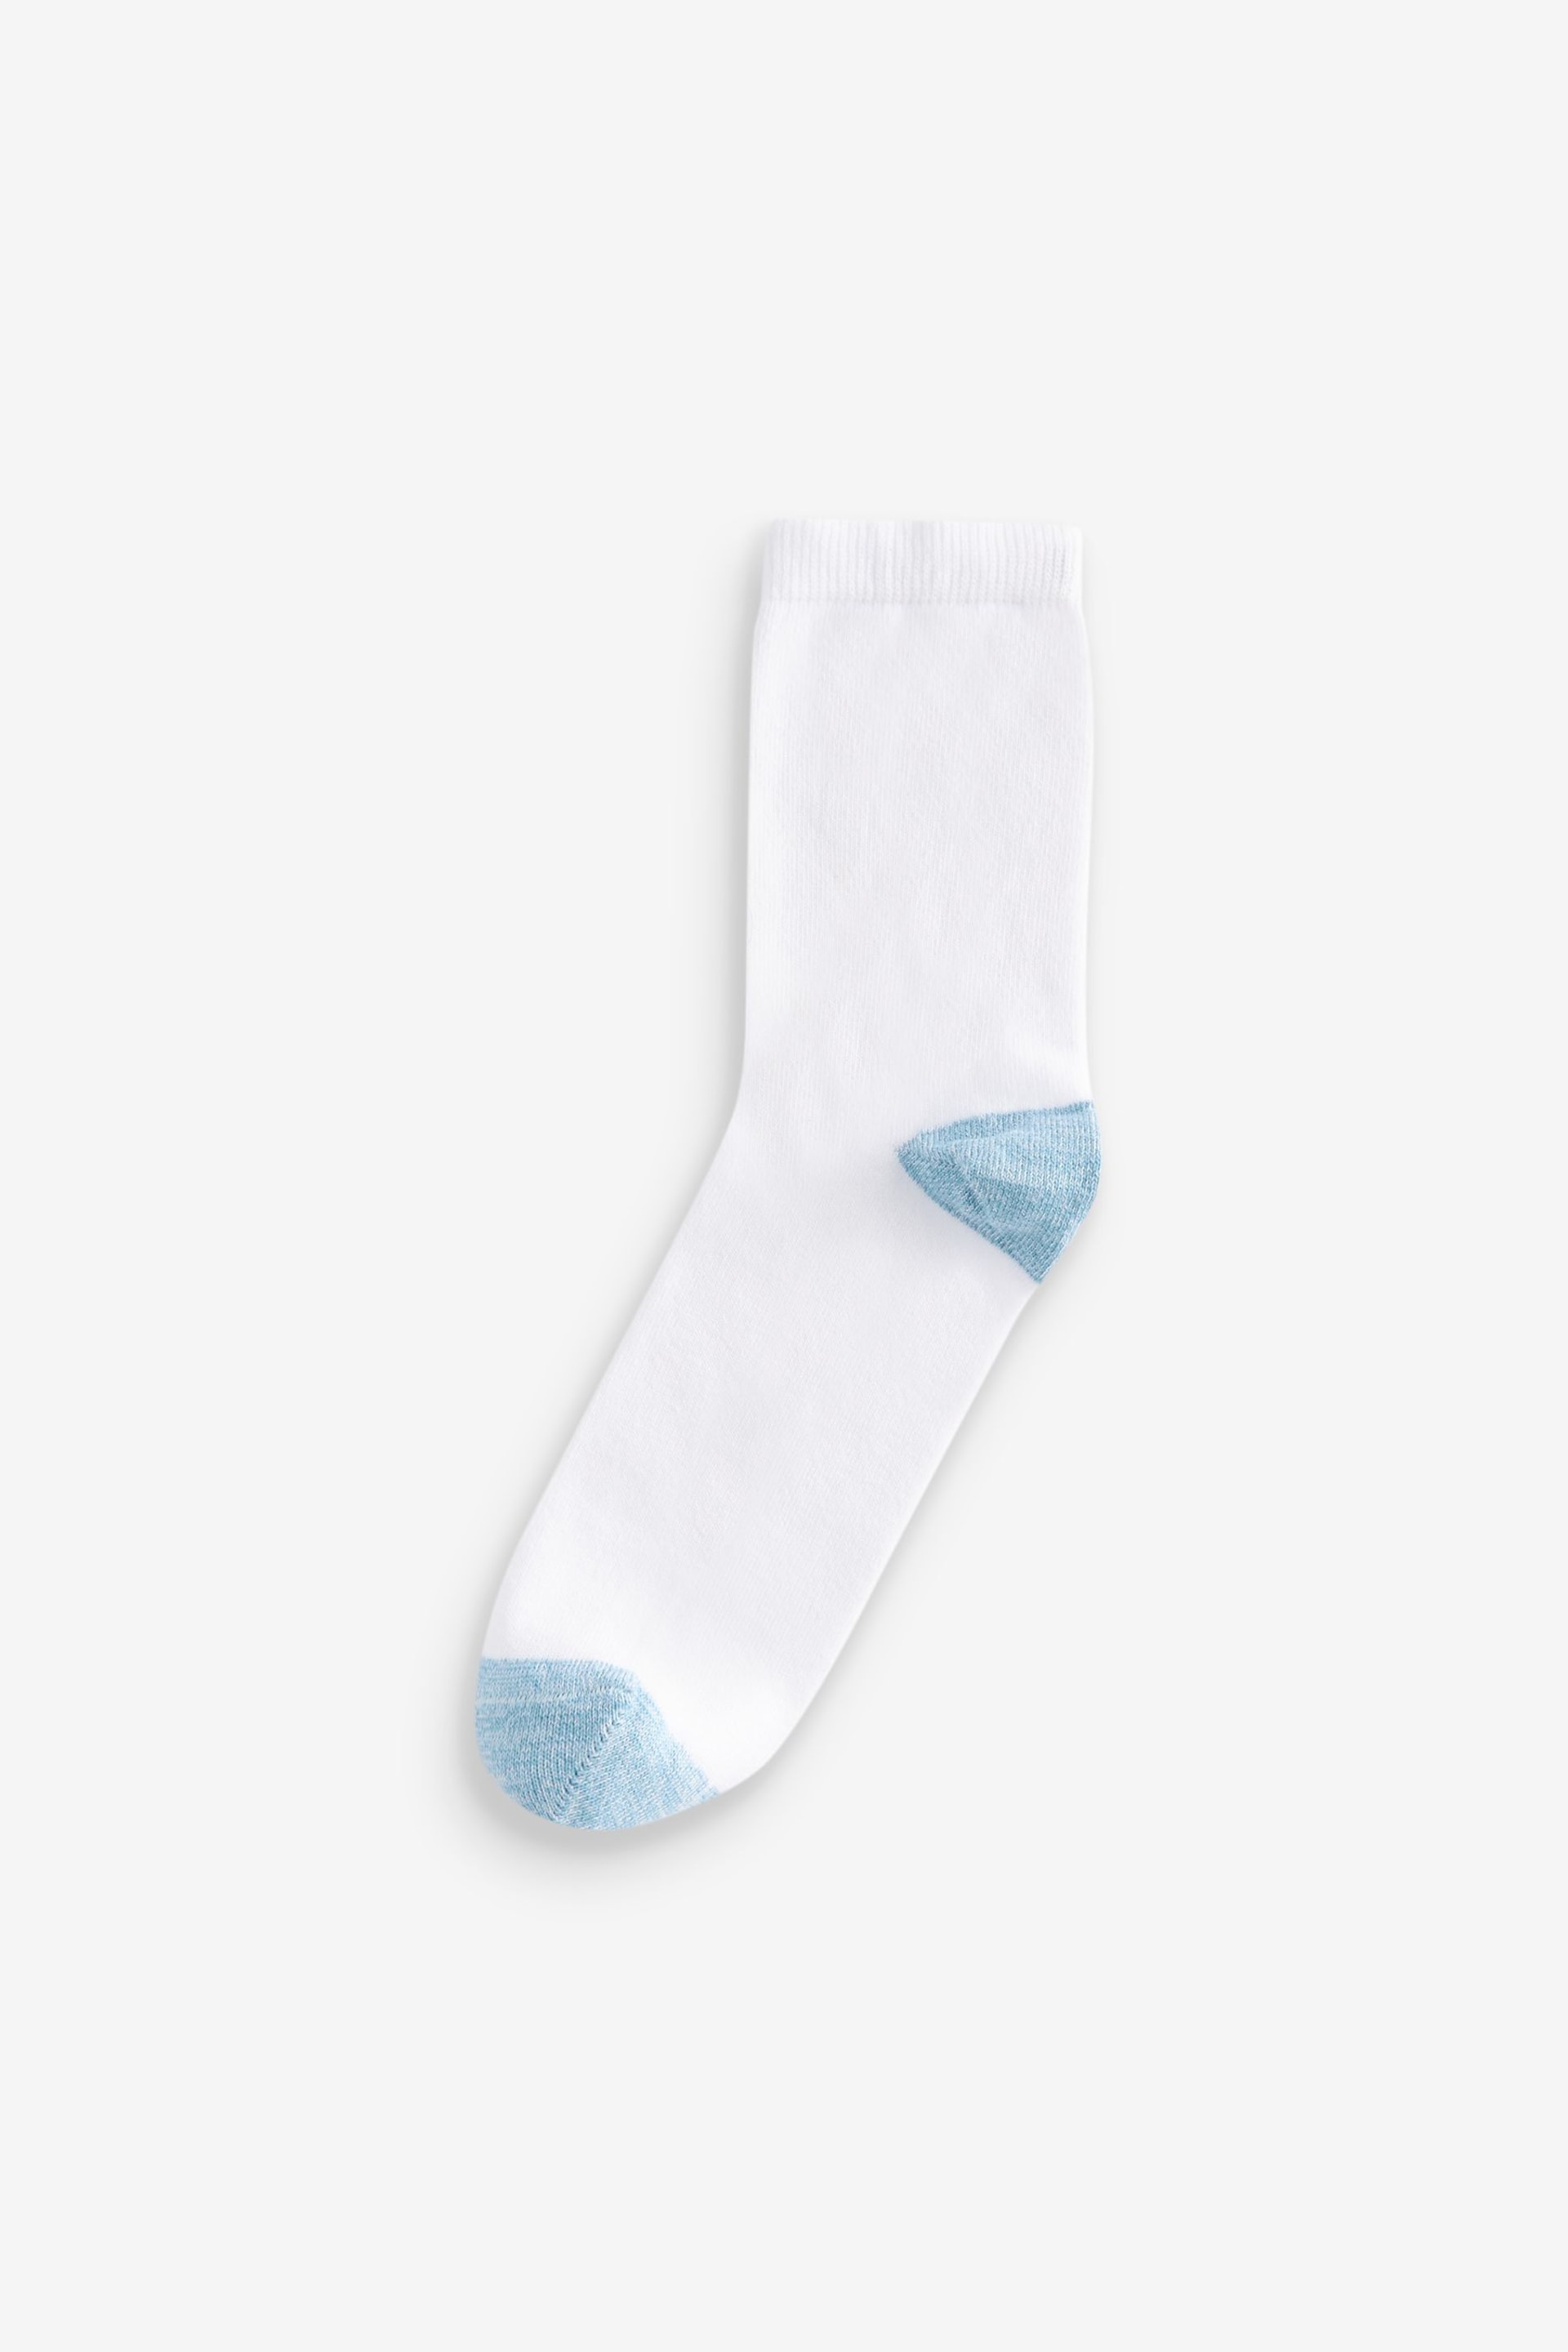 White Ankle Socks 4 Pack - Image 4 of 6